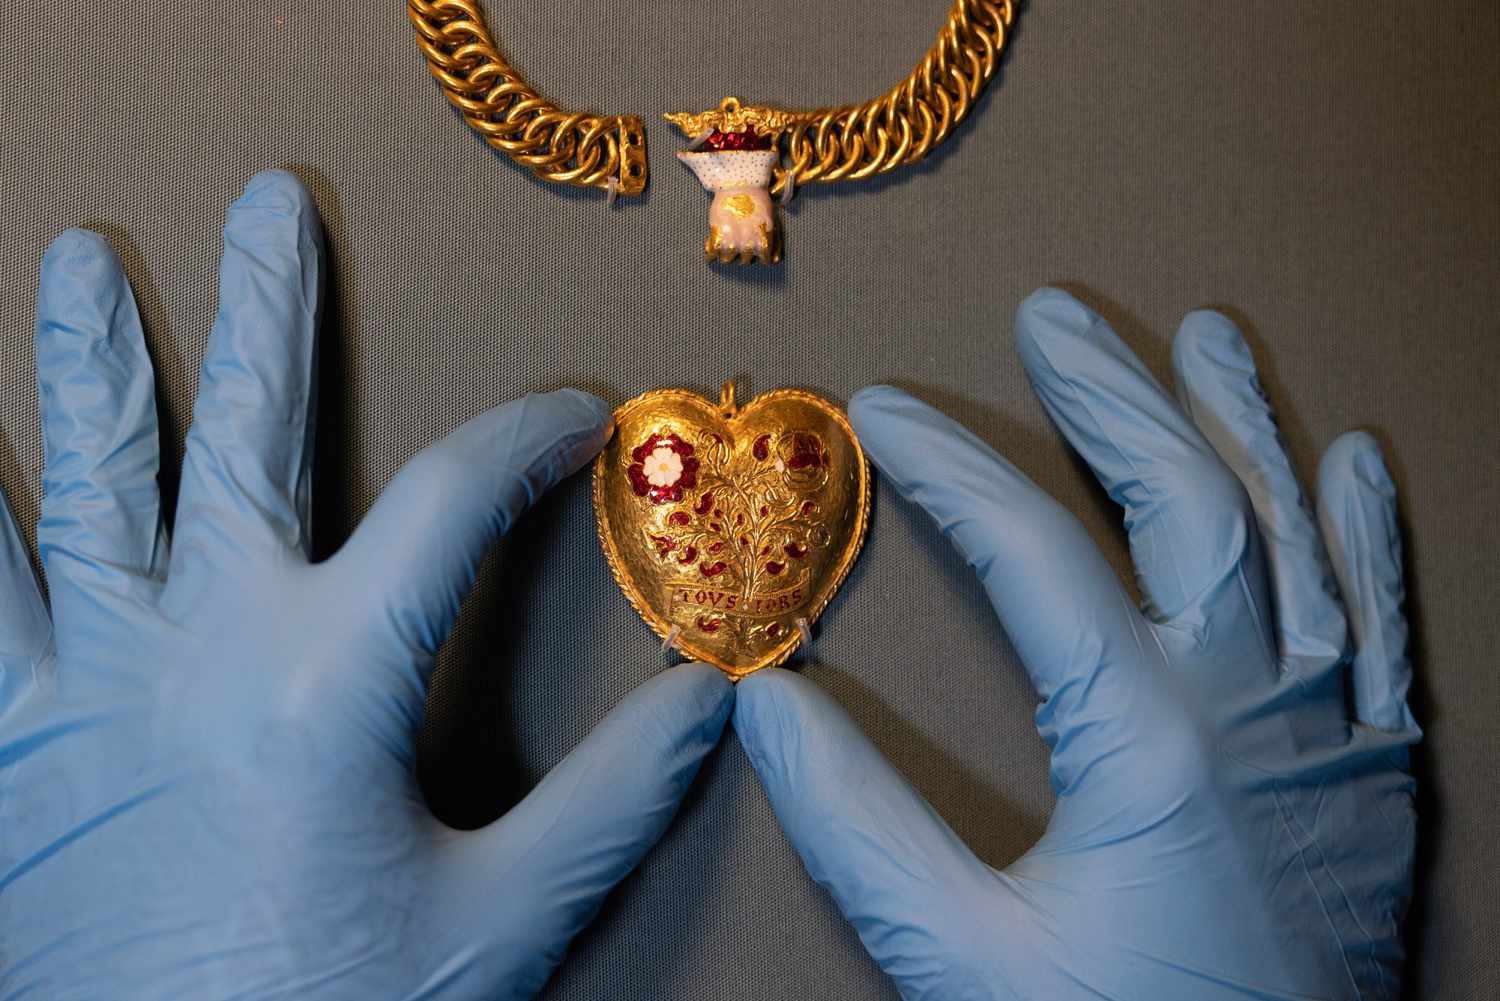 Chủ quán cà phê phát hiện ra mặt dây chuyền hình trái tim được liên kết với vua Henry VIII trong lĩnh vực: 'Tìm thấy một lần trong thế hệ'